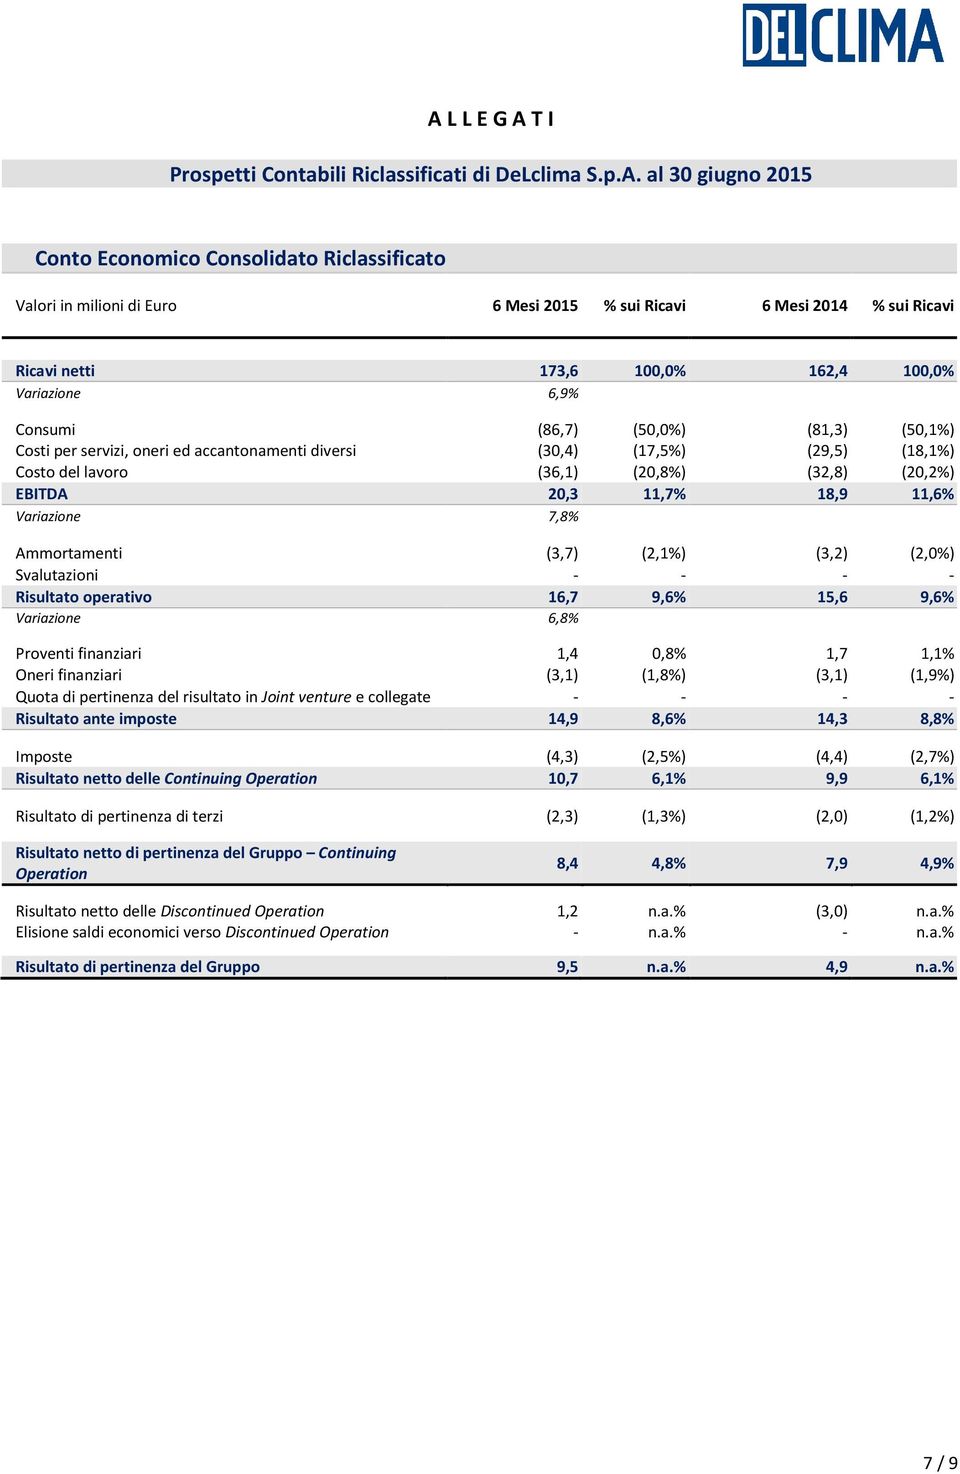 EBITDA 20,3 11,7% 18,9 11,6% 7,8% Ammortamenti (3,7) (2,1%) (3,2) (2,0%) Svalutazioni - - - - Risultato operativo 16,7 9,6% 15,6 9,6% 6,8% Proventi finanziari 1,4 0,8% 1,7 1,1% Oneri finanziari (3,1)